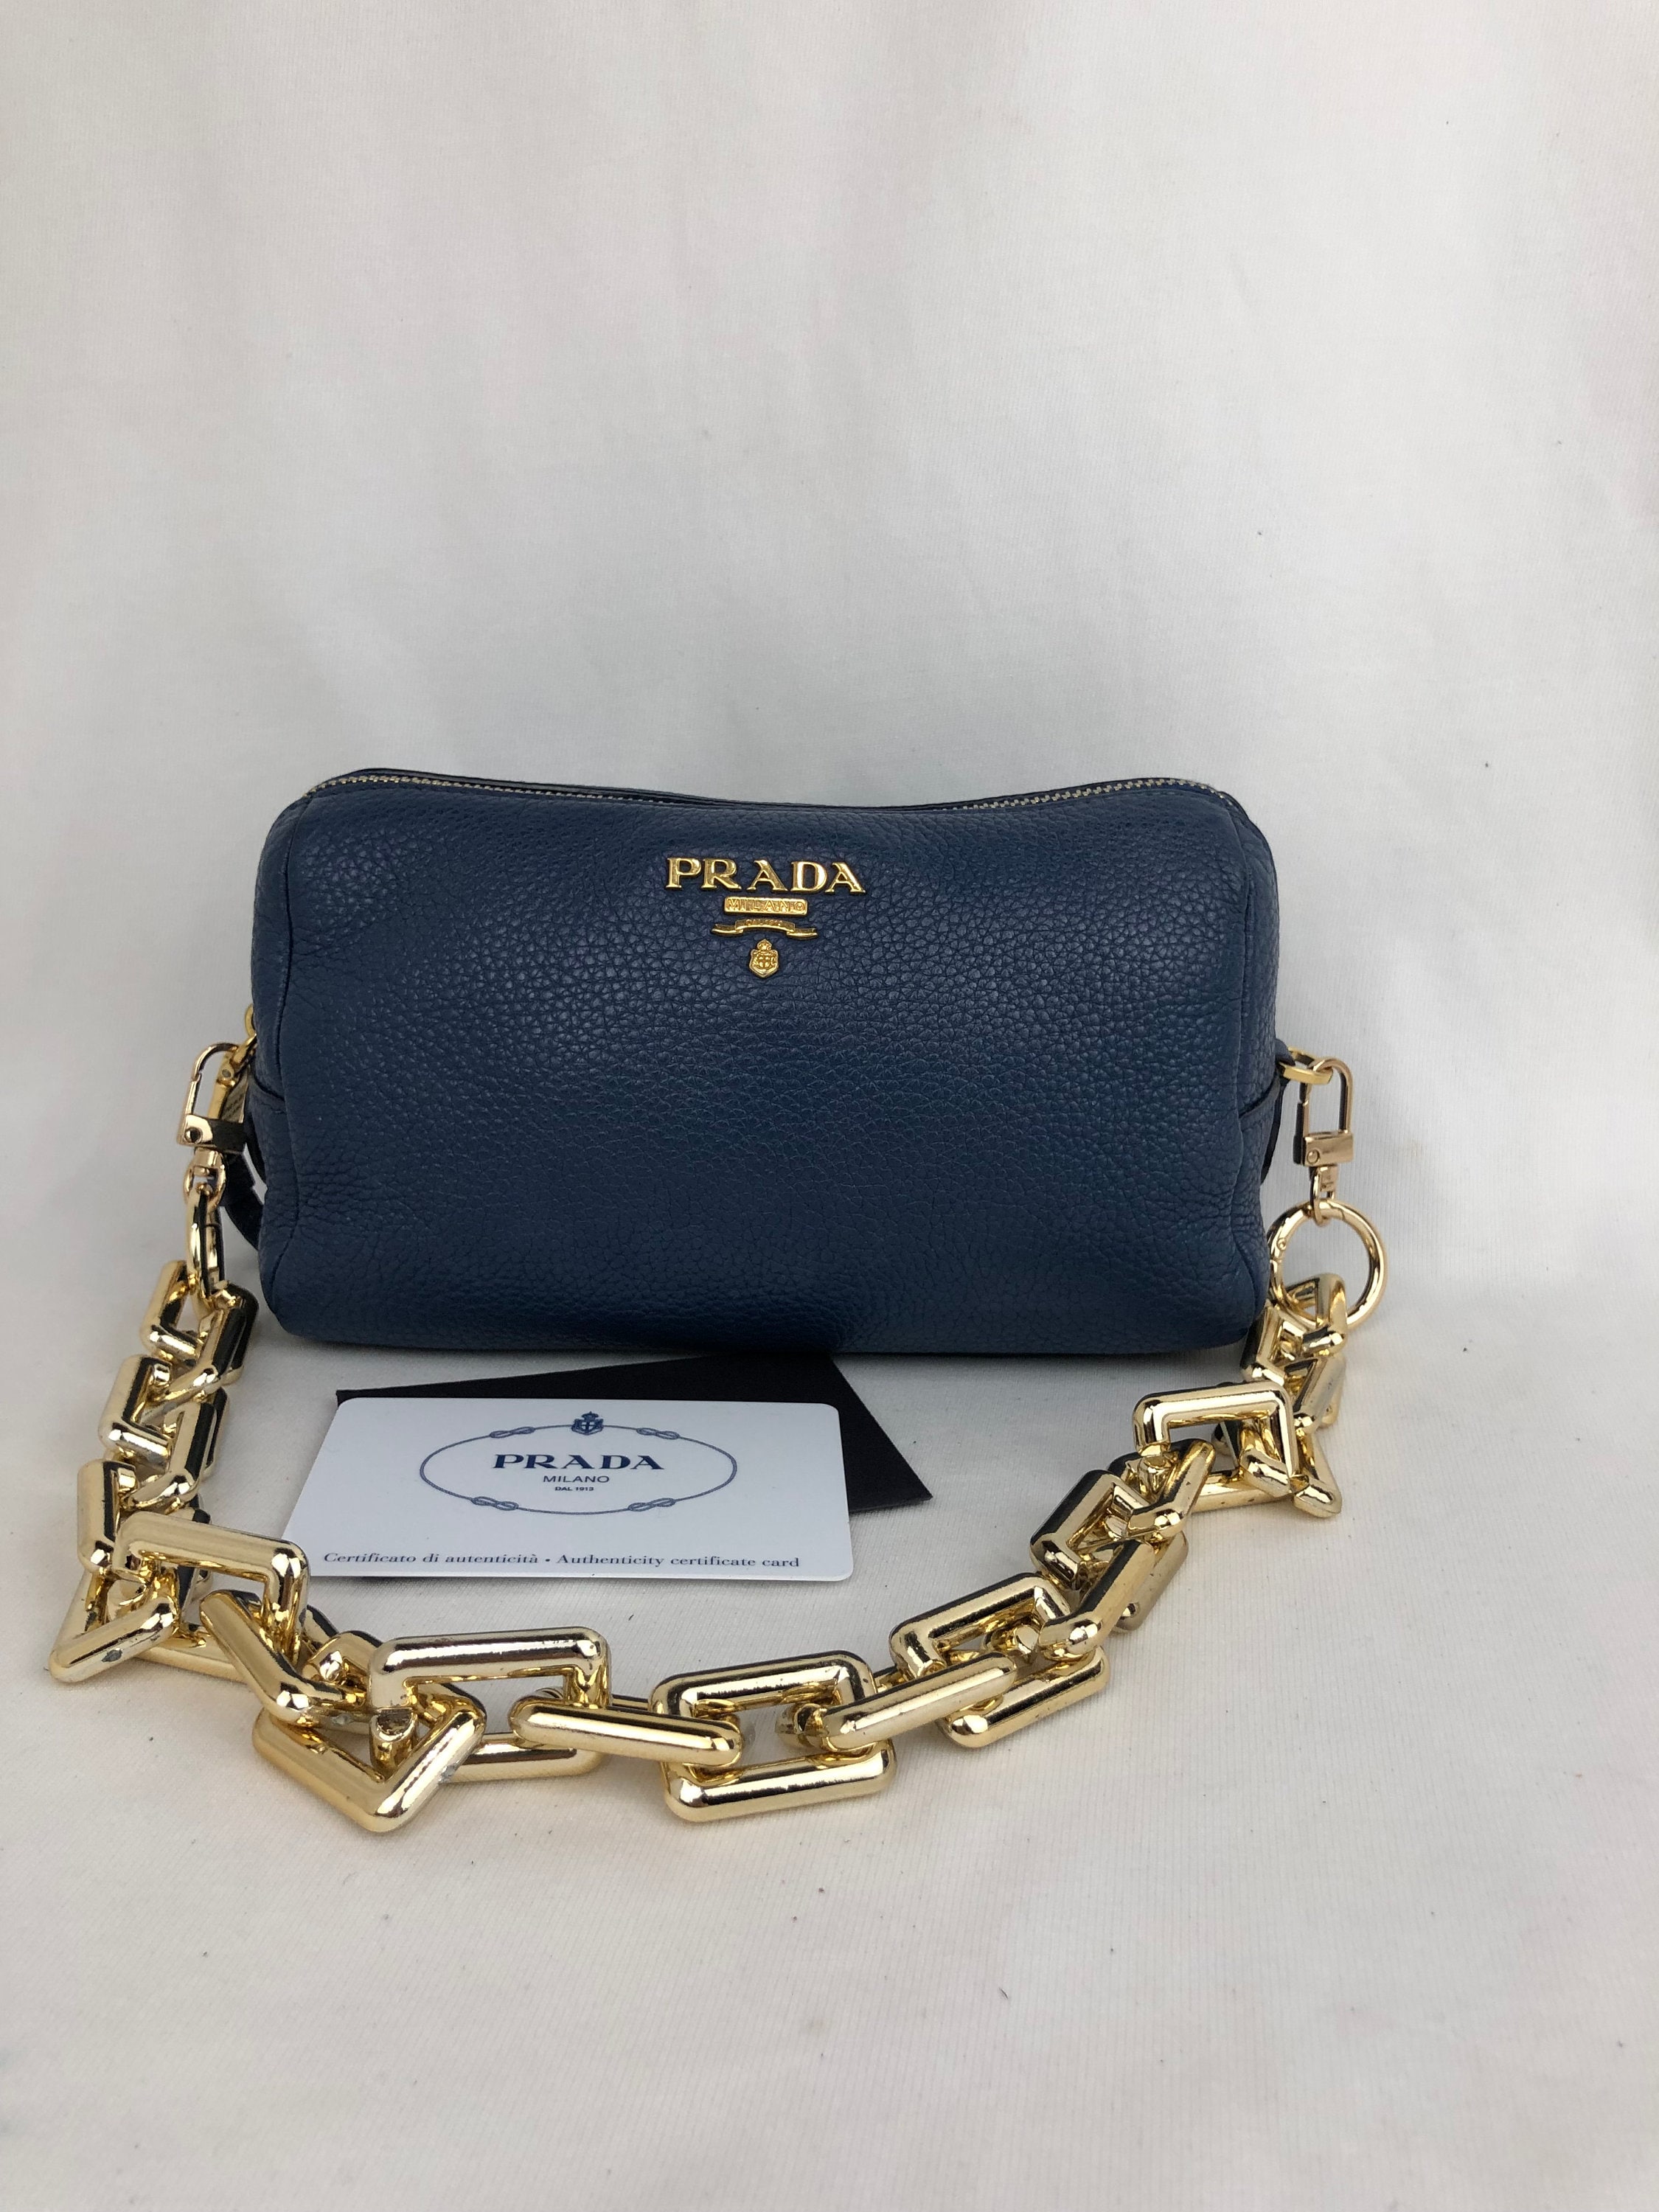 Prada Blue Leather Clutch Added Chain Strap Shoulder/handbag 